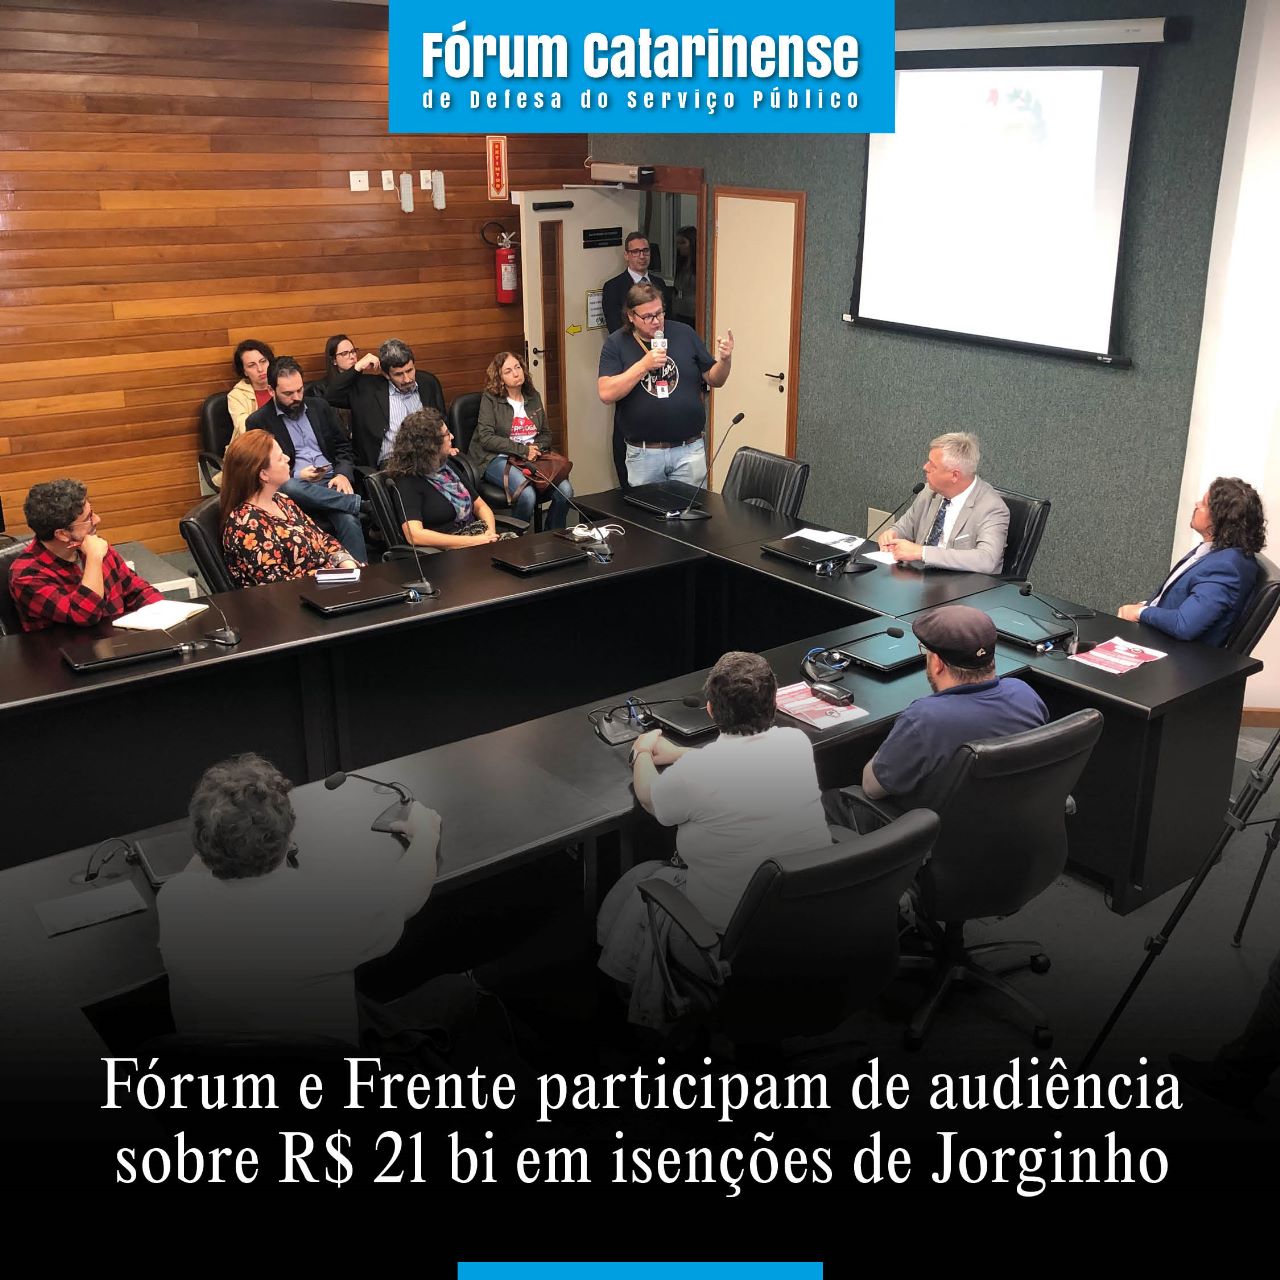 Fórum e Frente participam de audiência sobre R$ 21 bi em isenções de Jorginho